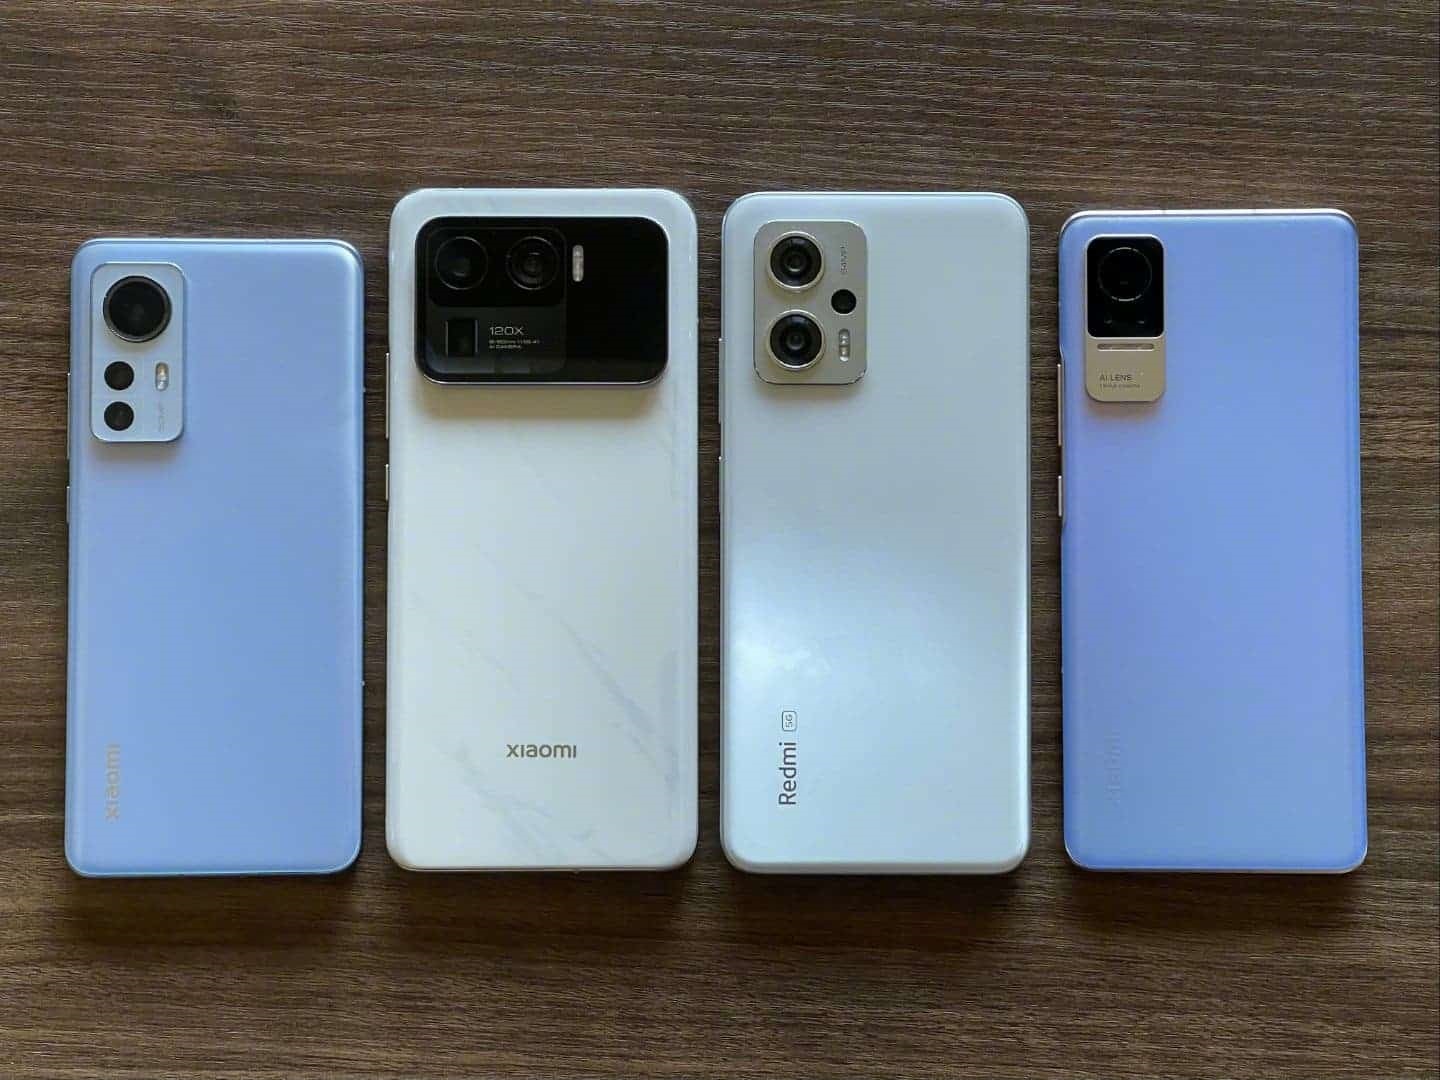 Đây là 4 chiếc smartphone CEO Xiaomi đang sử dụng